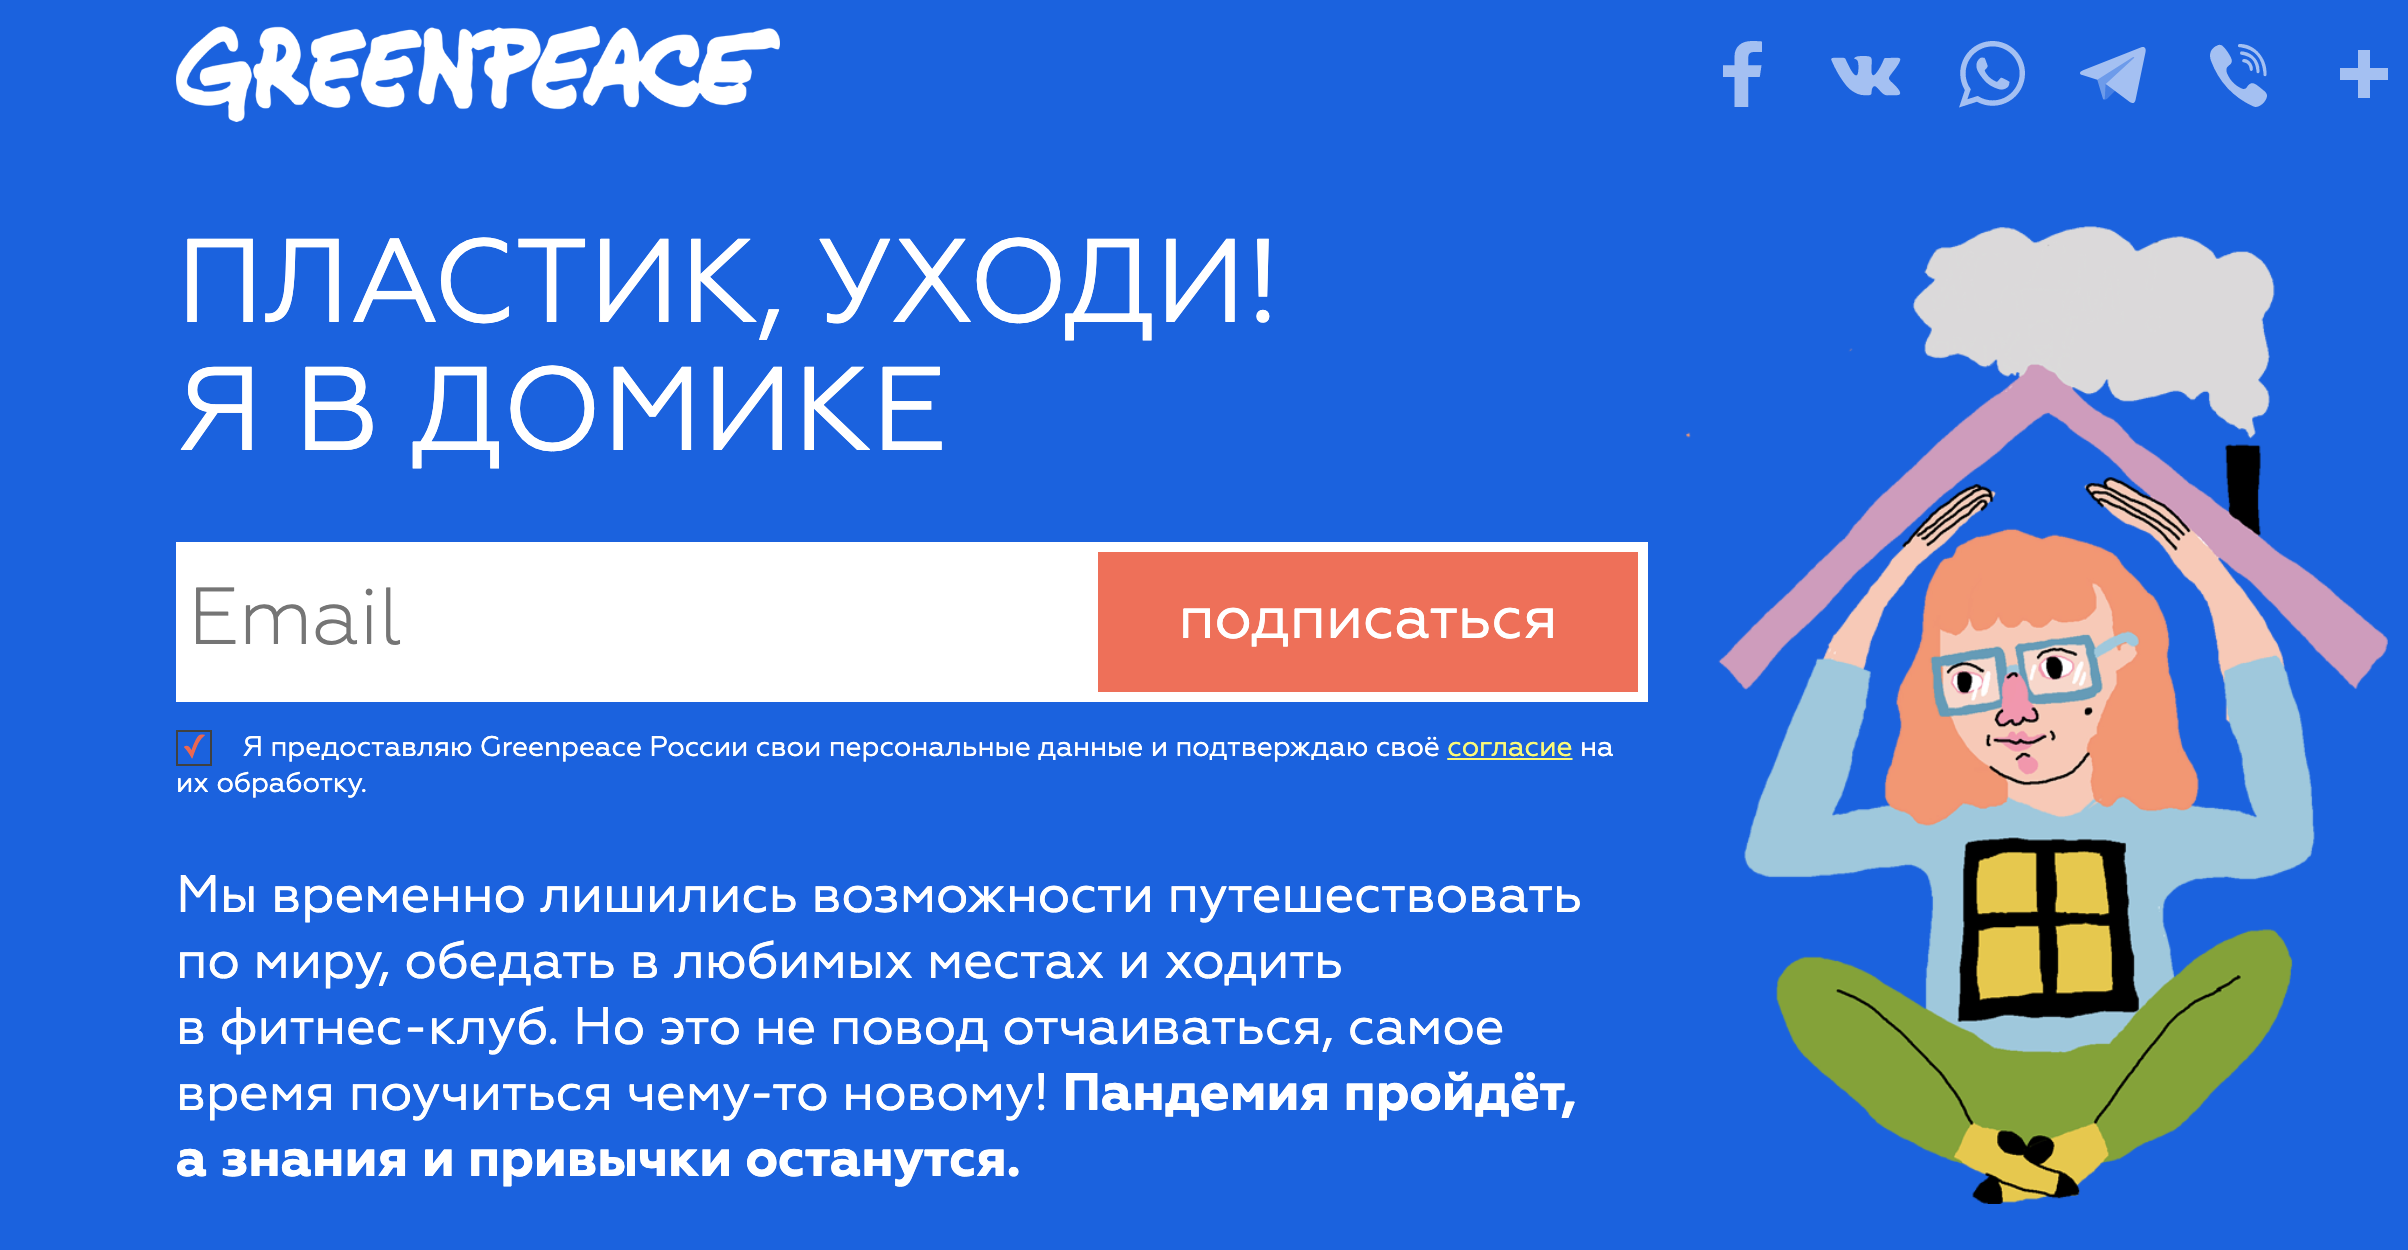 "Гринпис России" запустили email-рассылку под названием "Пластик, уходи! Я в домике". Изображение с сайта act.greenpeace.org